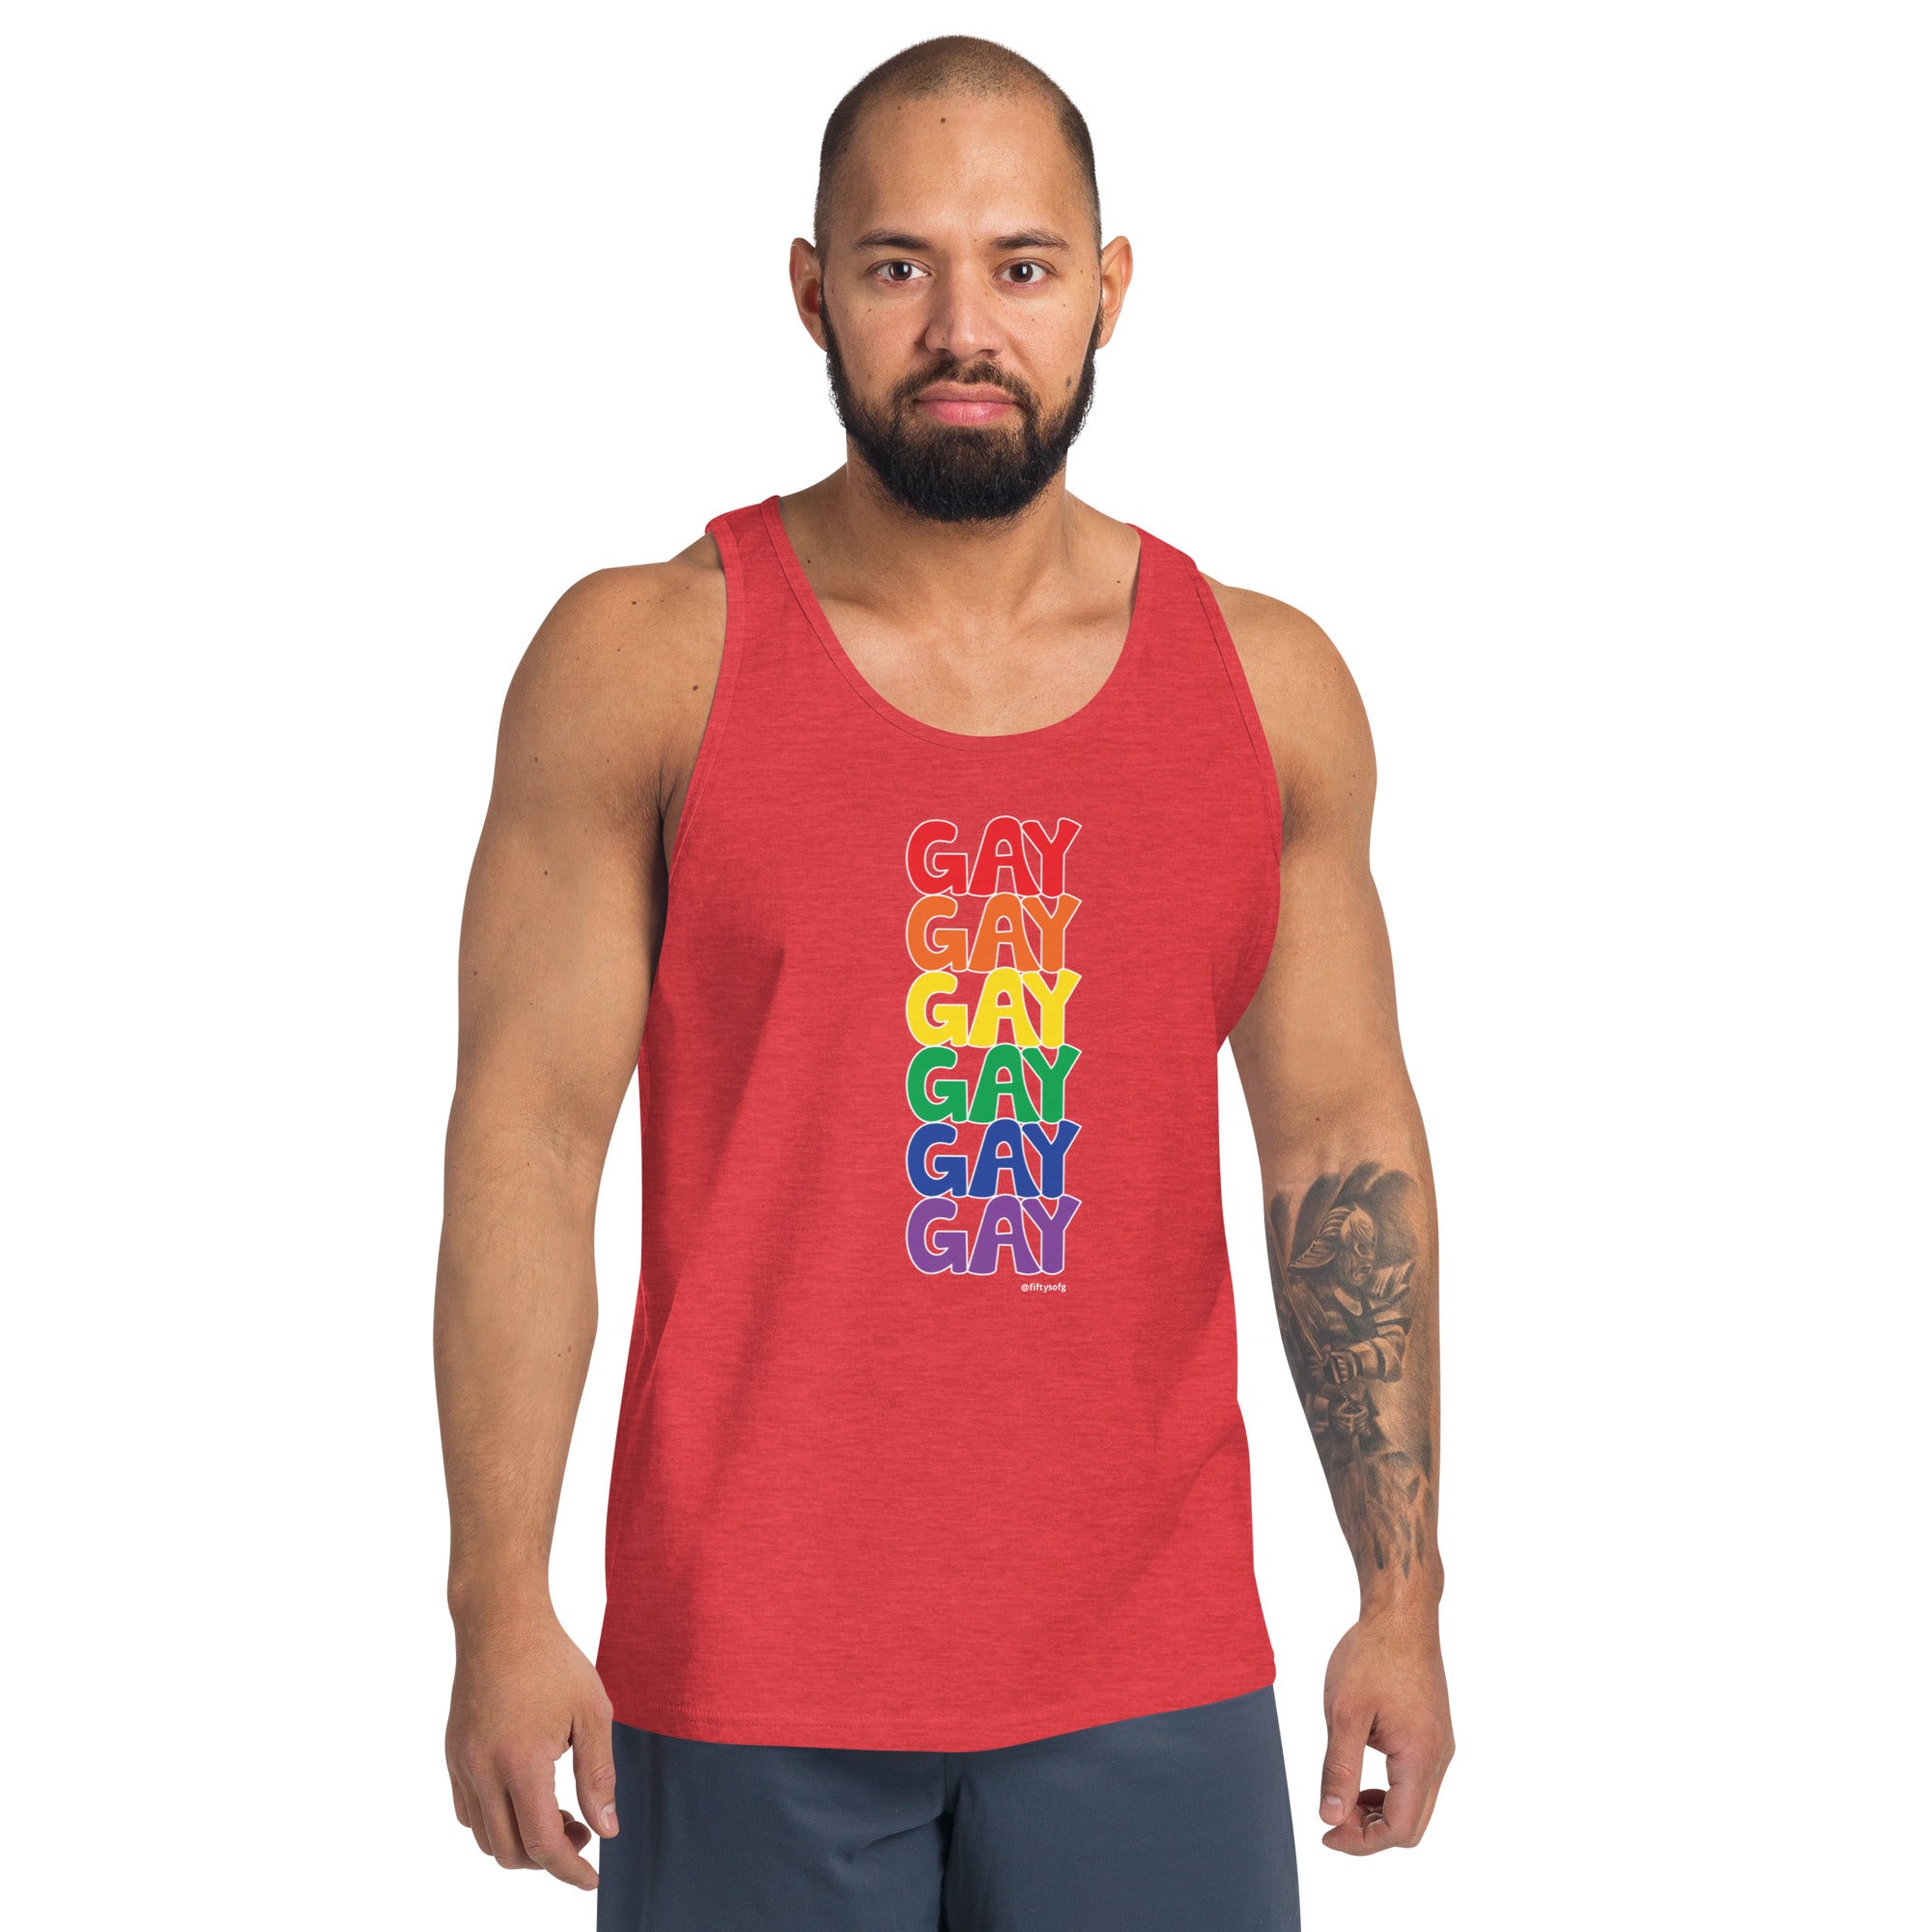 Just Say Gay - Funky Pride - Unisex Tank Top